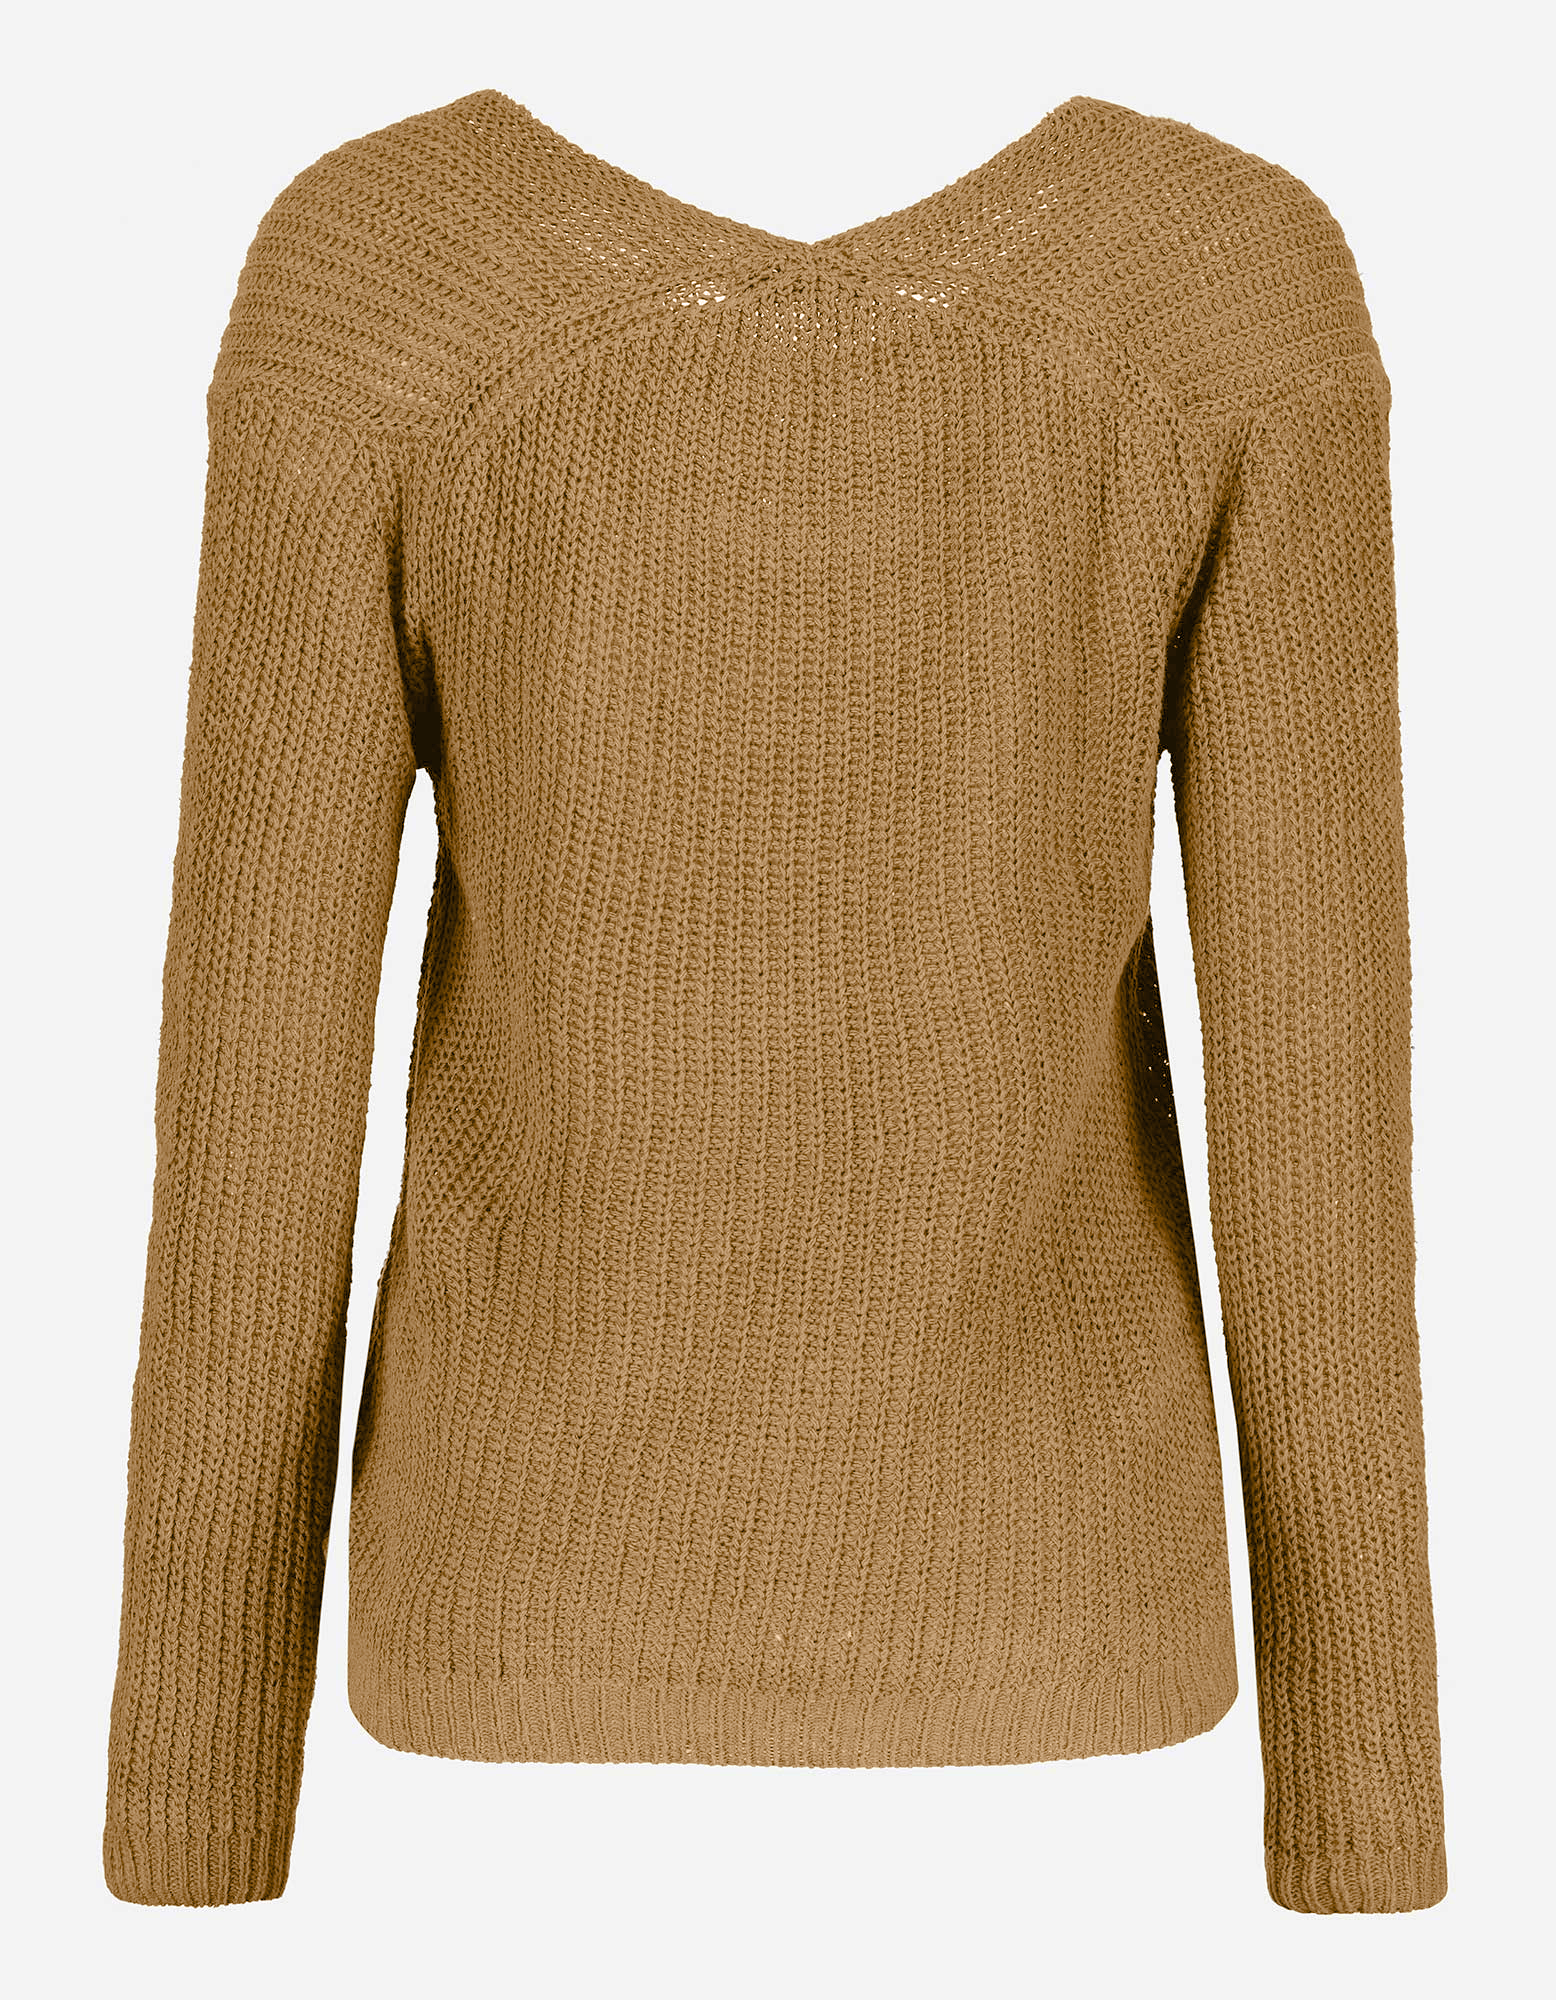 DAMEN Pullovers & Sweatshirts NO STYLE Zone Strickjacke Rabatt 99 % Schwarz XL 